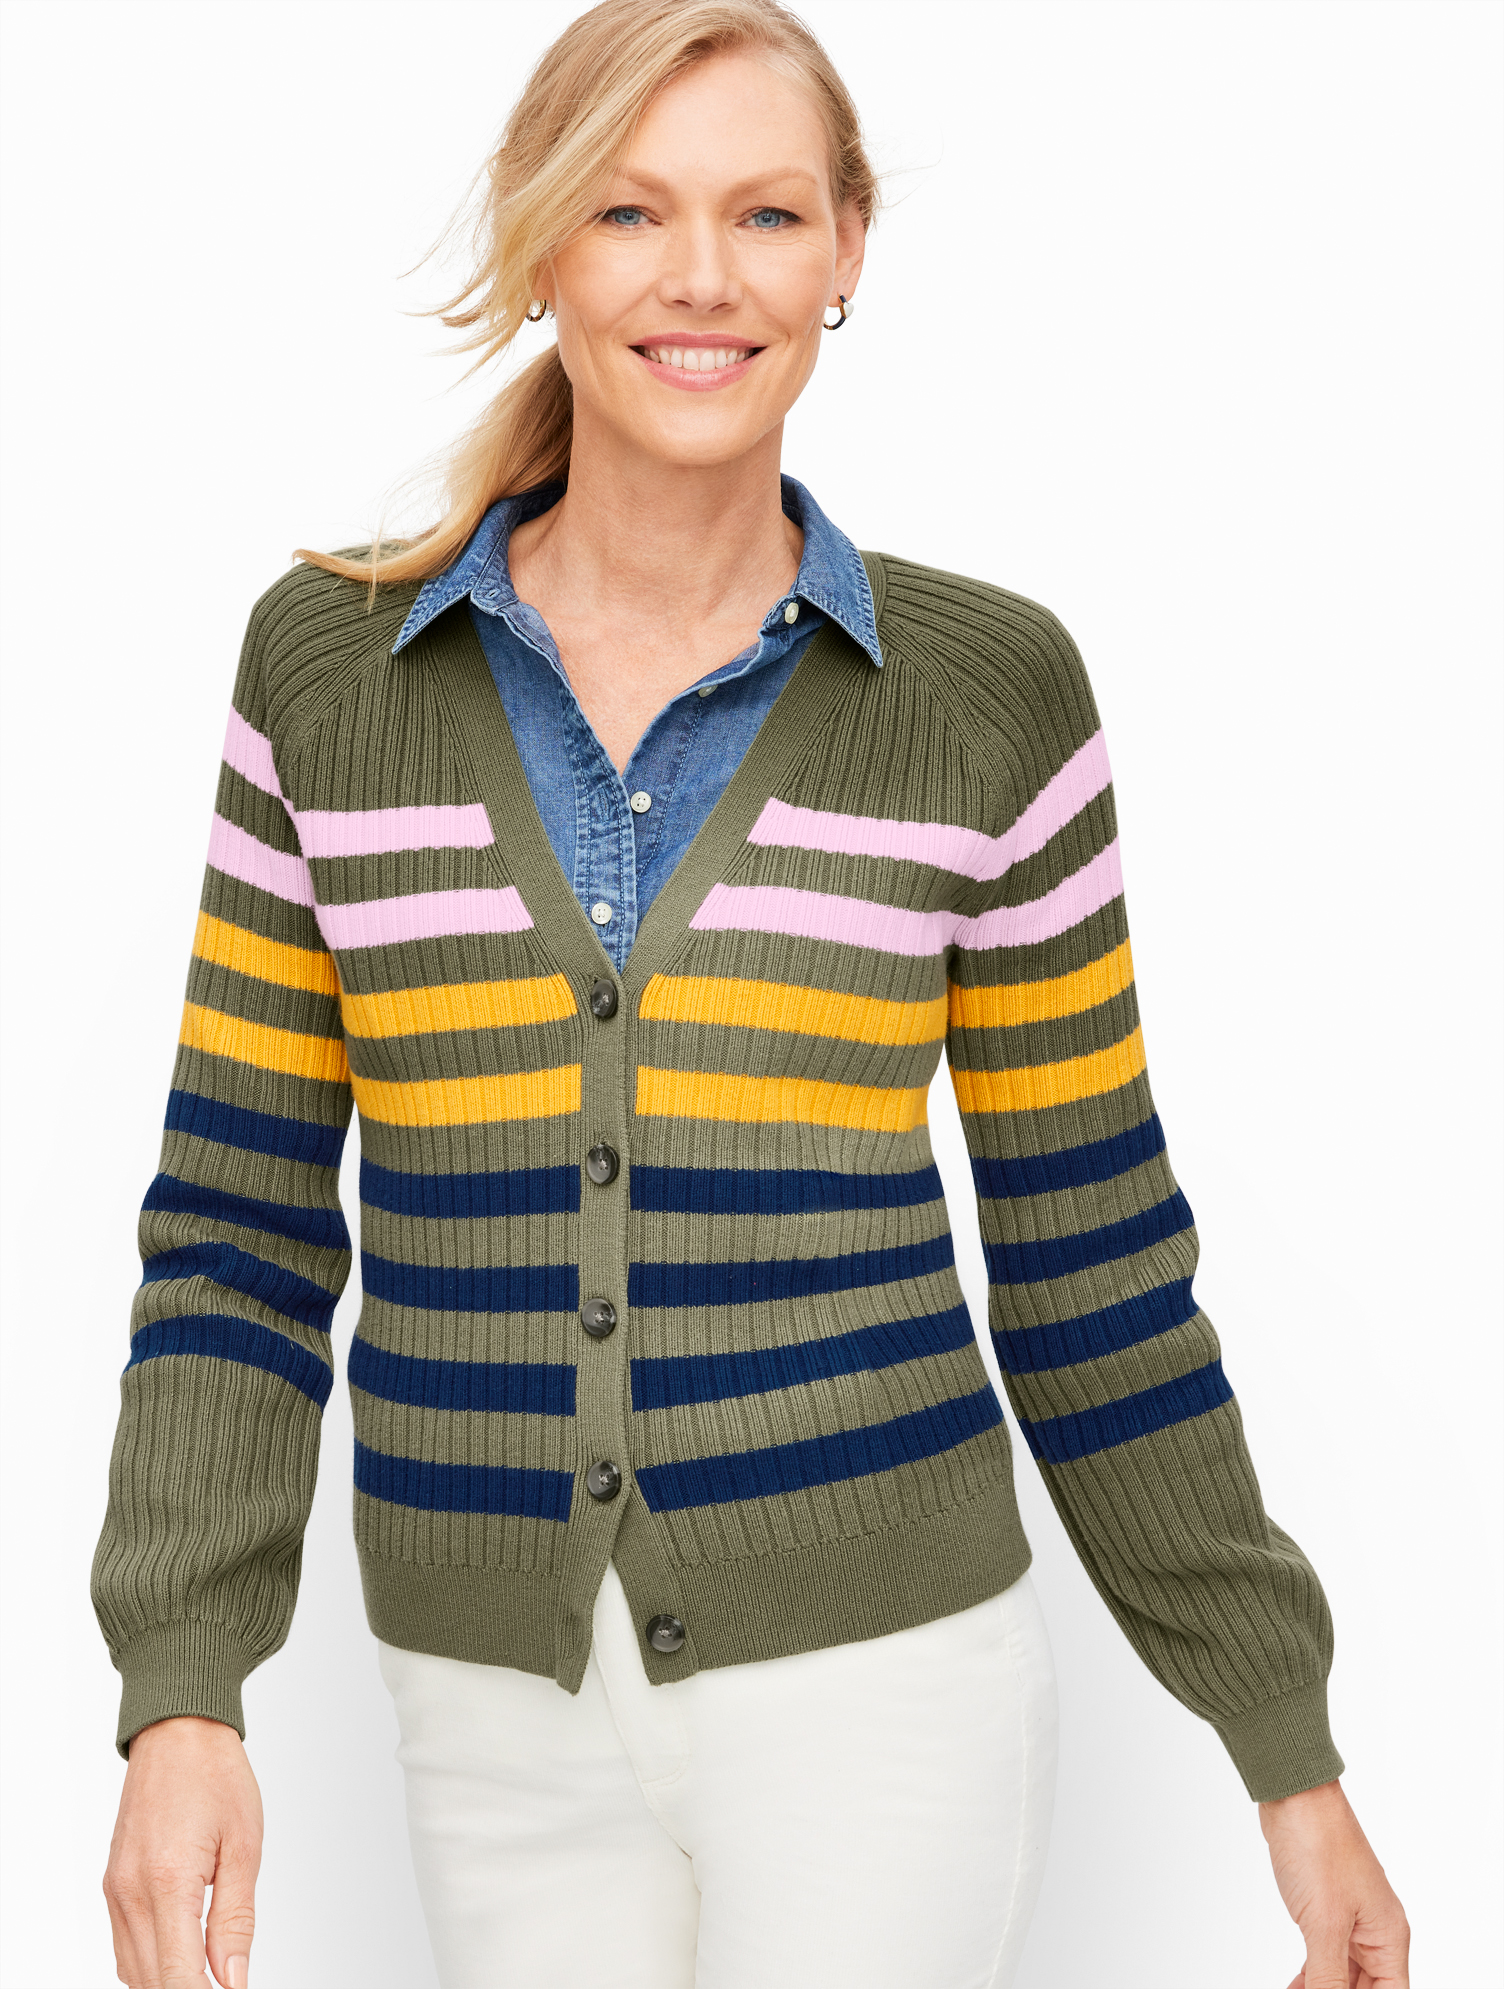 Talbots V-neck Cardigan Sweater - Breton Stripe - Sagebrush - 1x